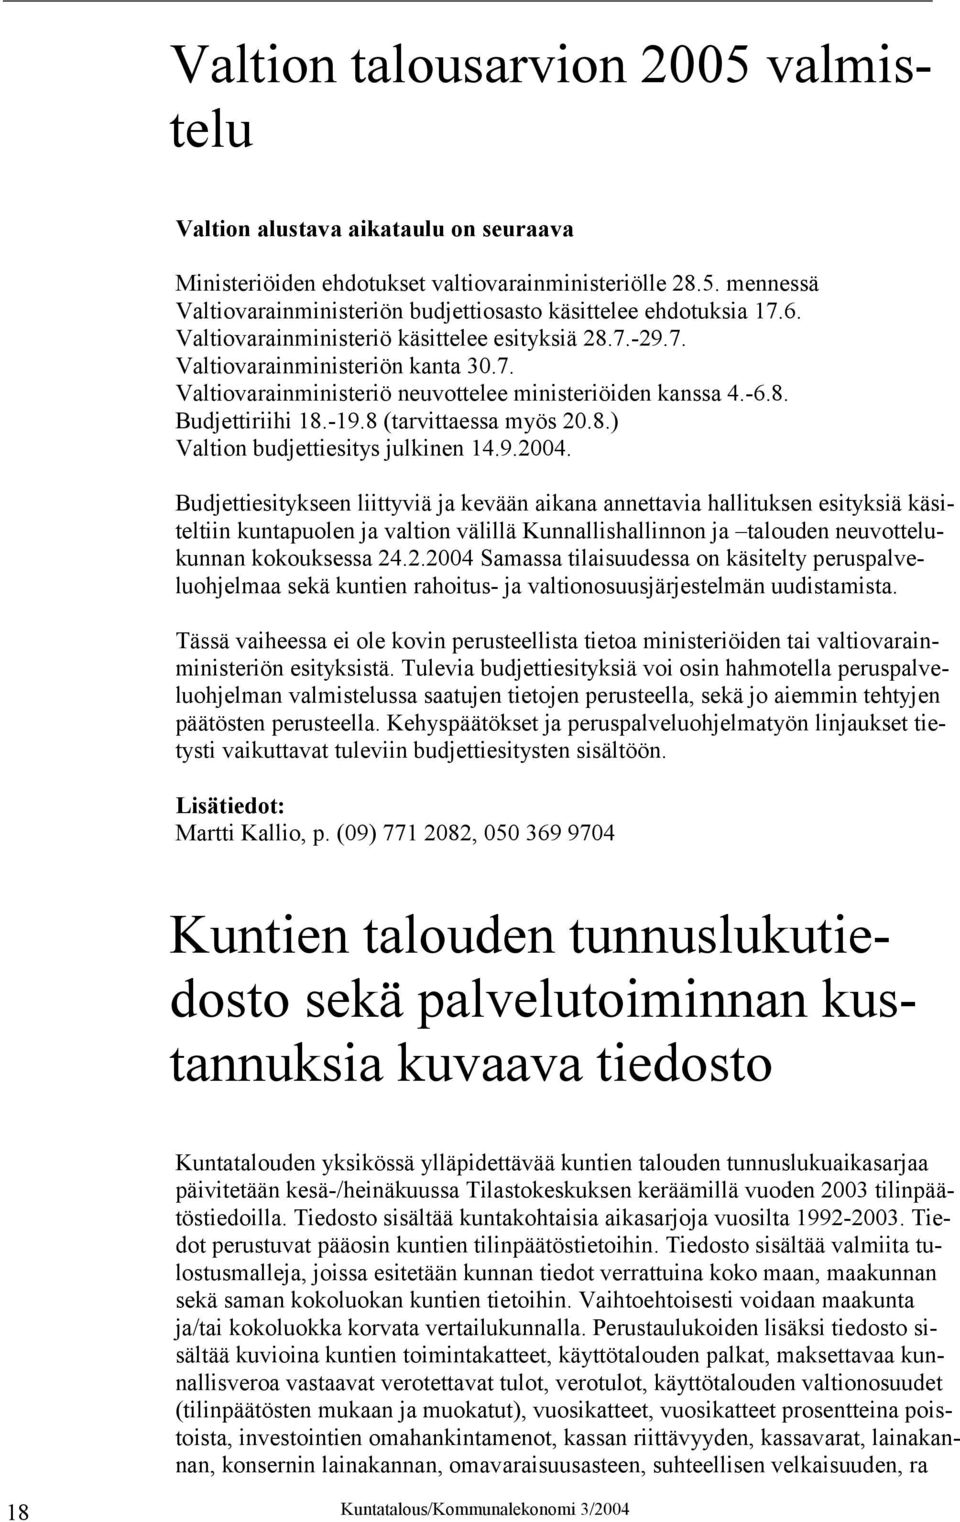 8 (tarvittaessa myös 20.8.) Valtion budjettiesitys julkinen 14.9.2004.